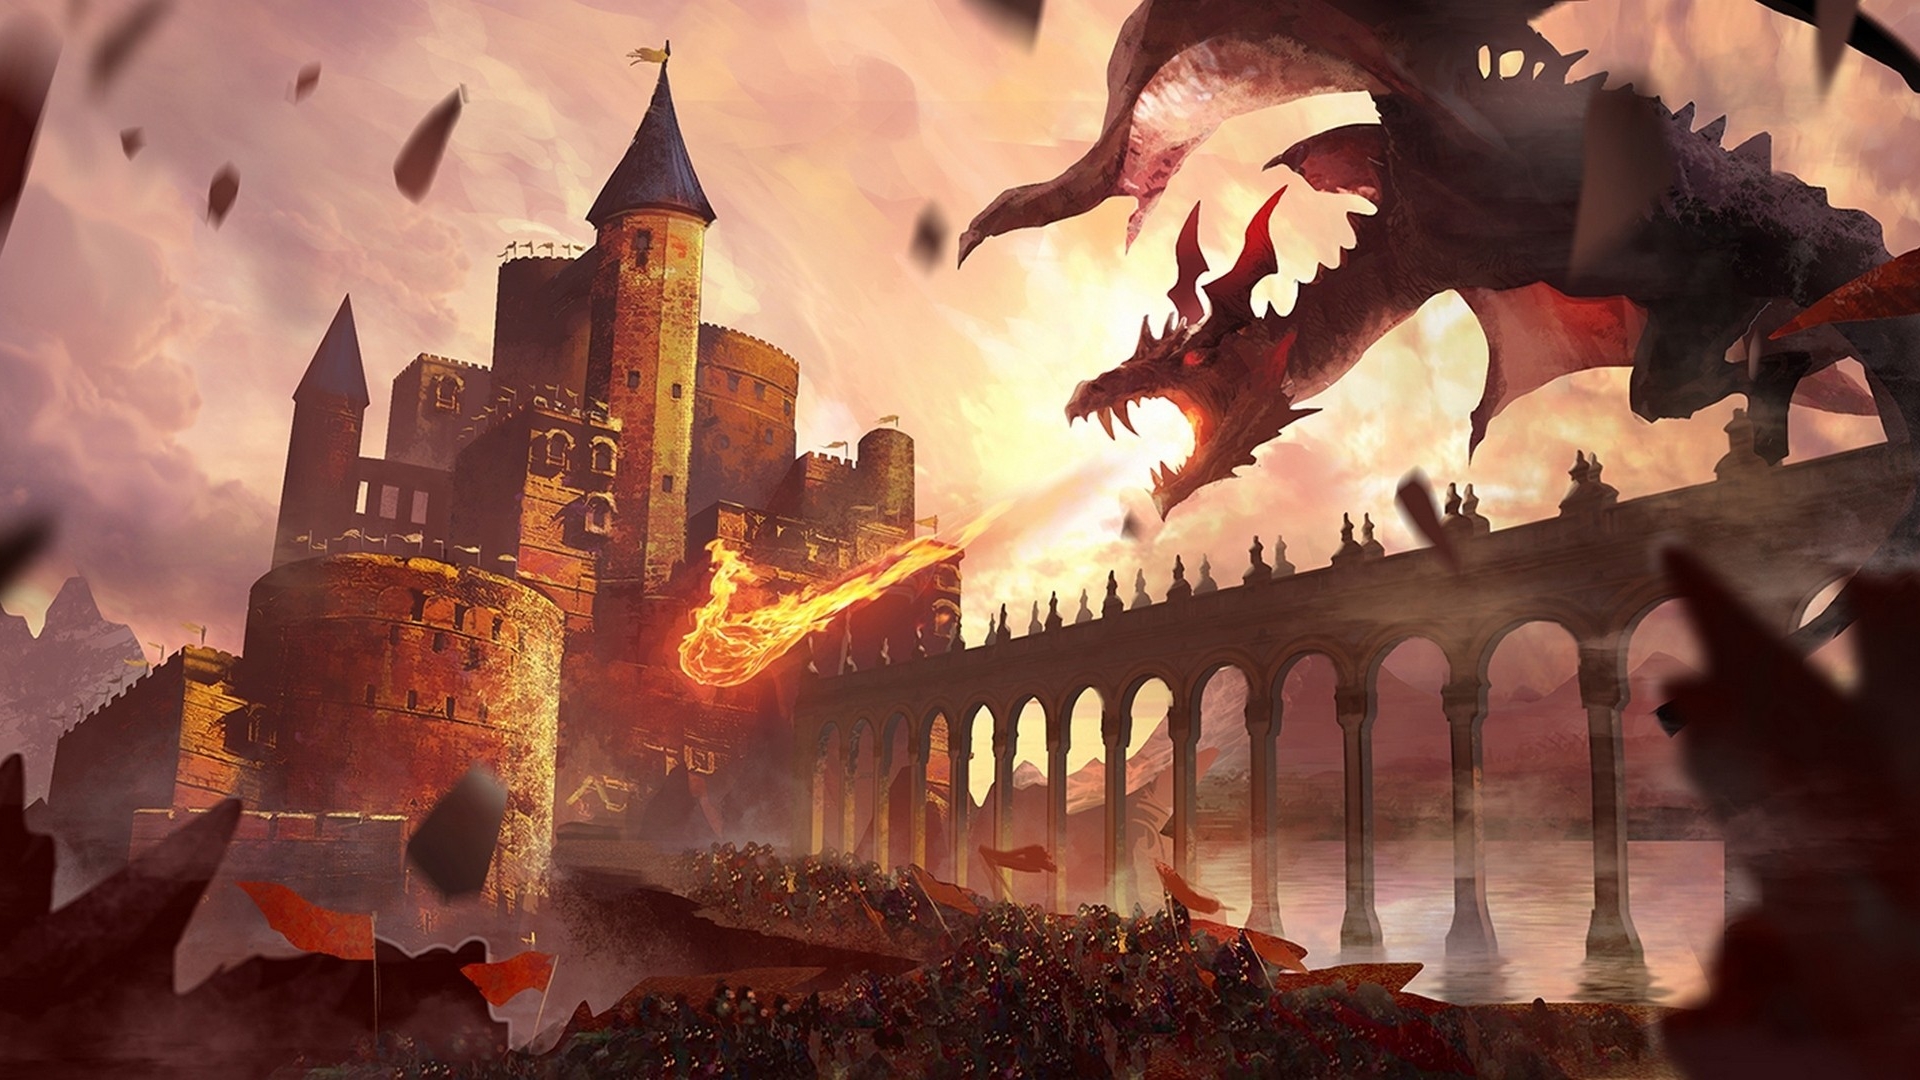 Dragon Dragon Attack Wyvern Army Castle Siege War 1920x1080